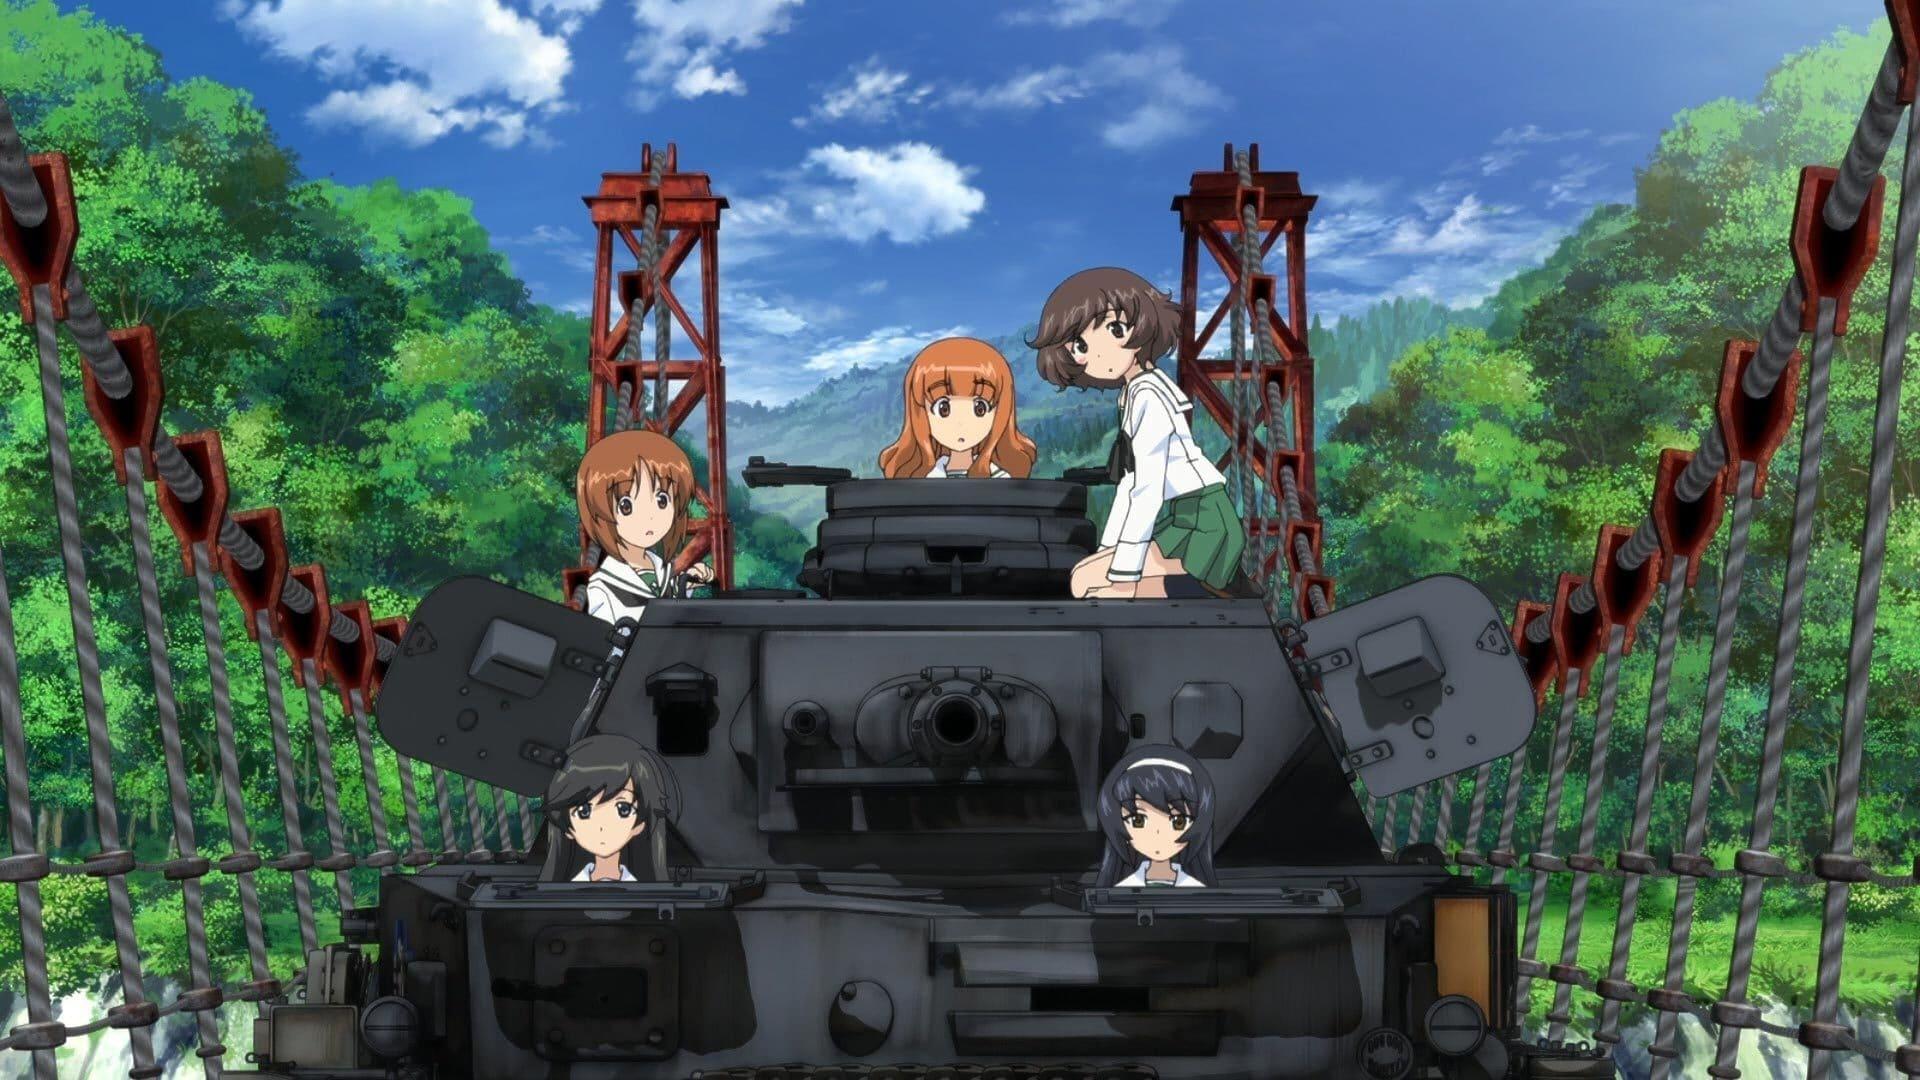 Girls und Panzer: The Movie backdrop